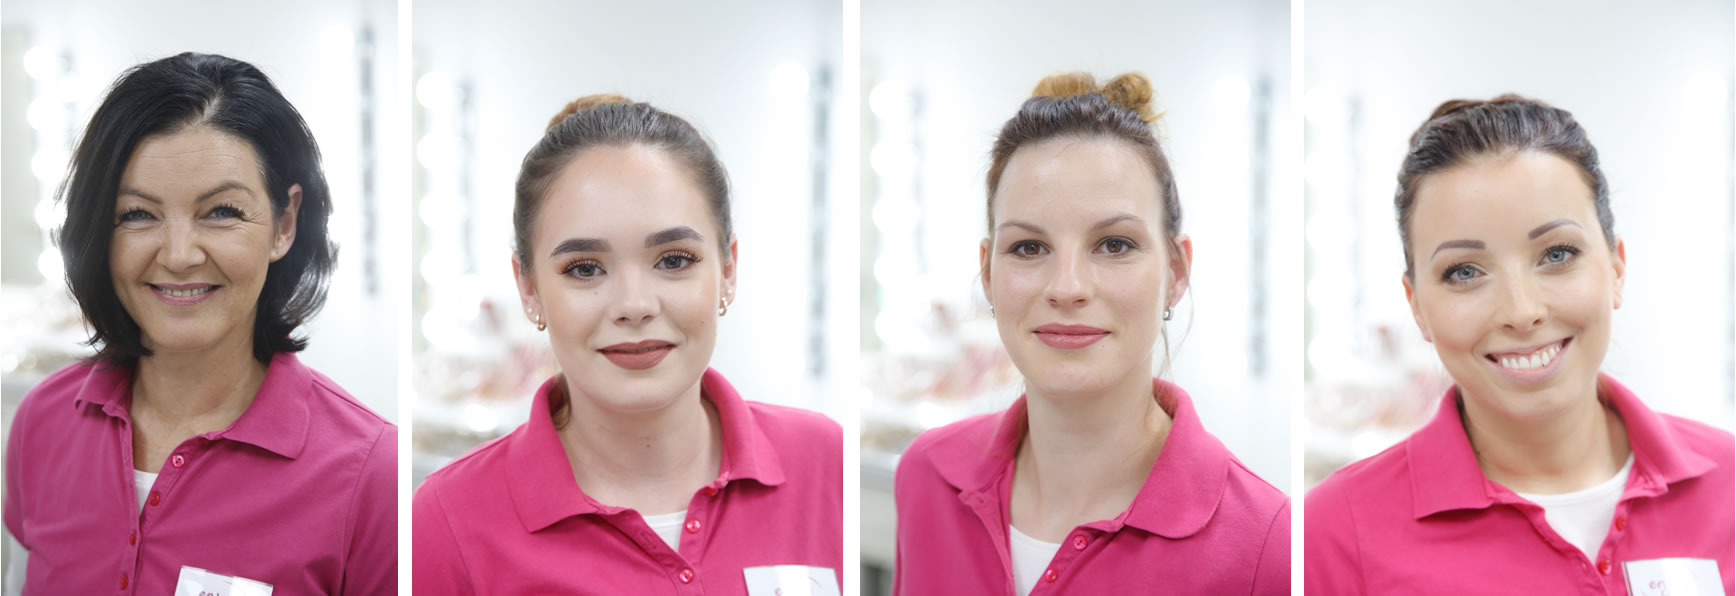 fachkosmetik-team-beautystudio-enjoy Moderne Gesichtsbehandlungen